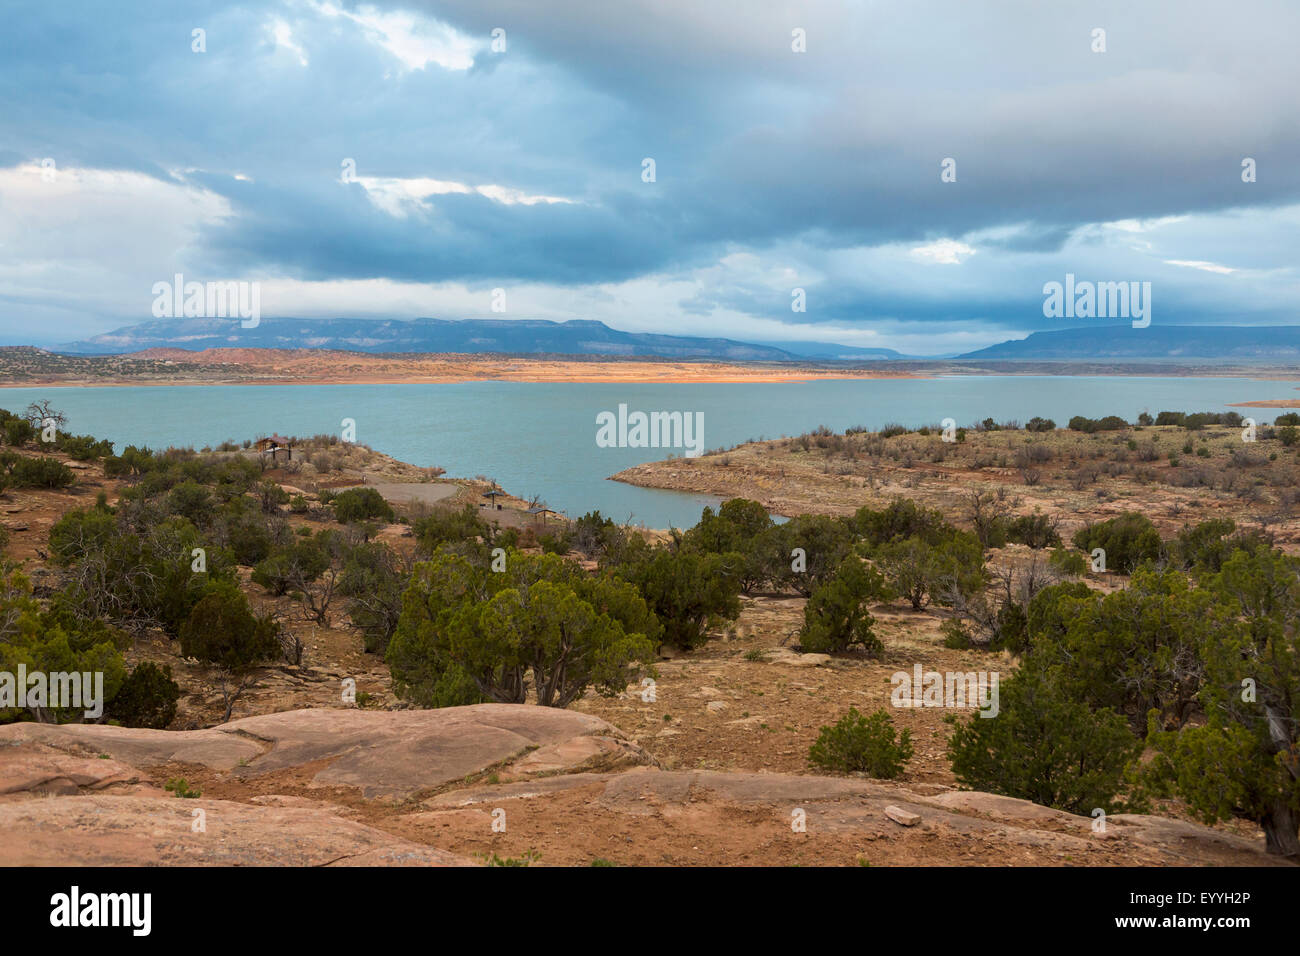 Paysage désertique et rivière sous ciel nuageux Banque D'Images